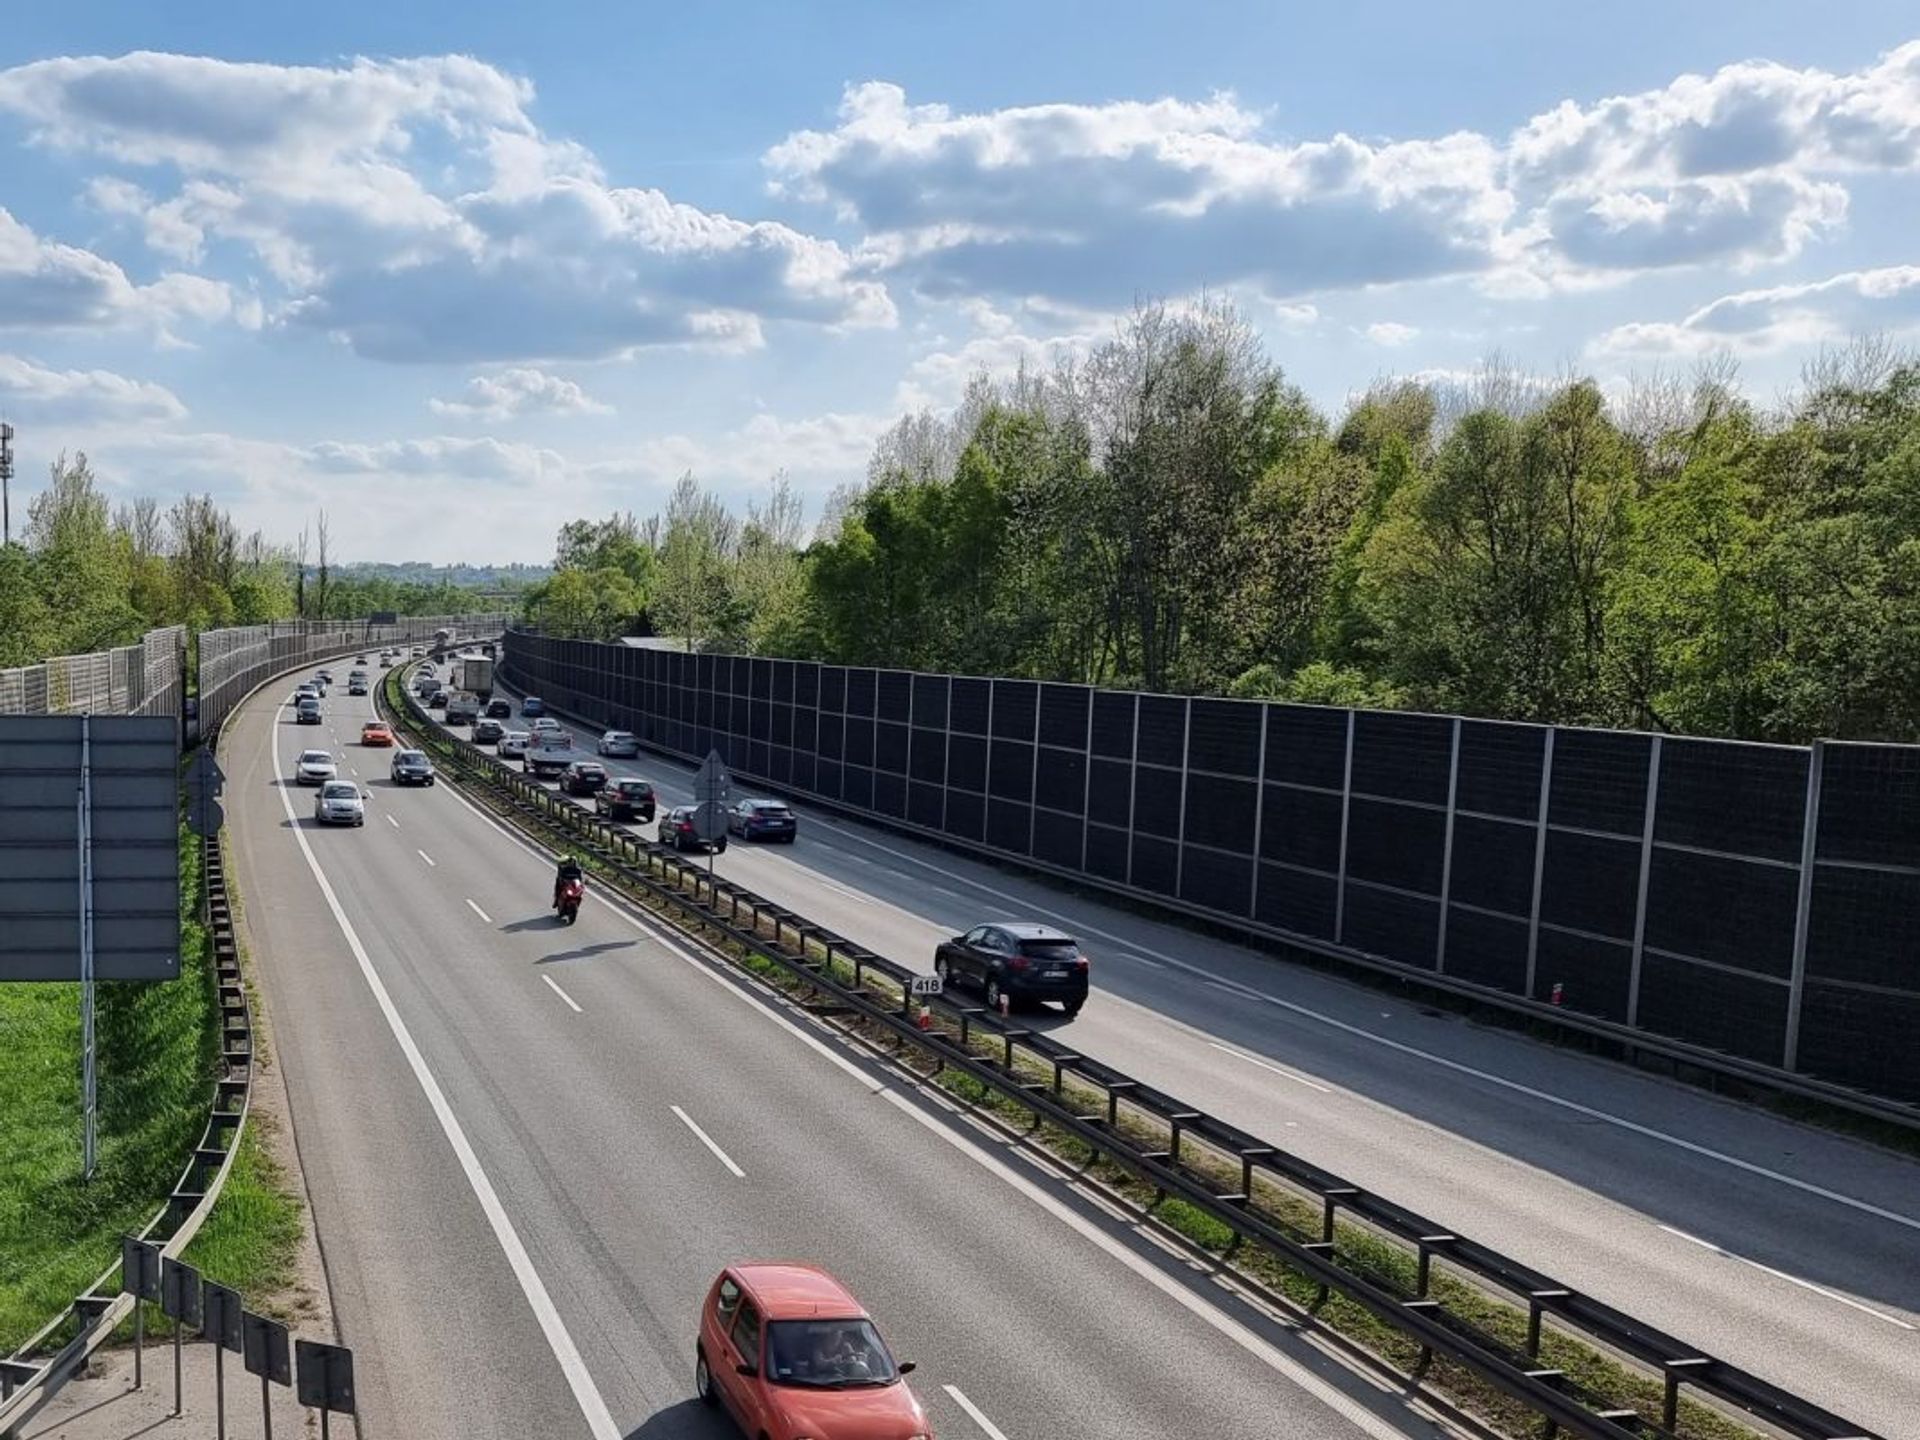 Najkorzystniejsza oferta na dokumentację dla trzeciego pasa ruchu Autostradowej Obwodnicy Krakowa (A4)